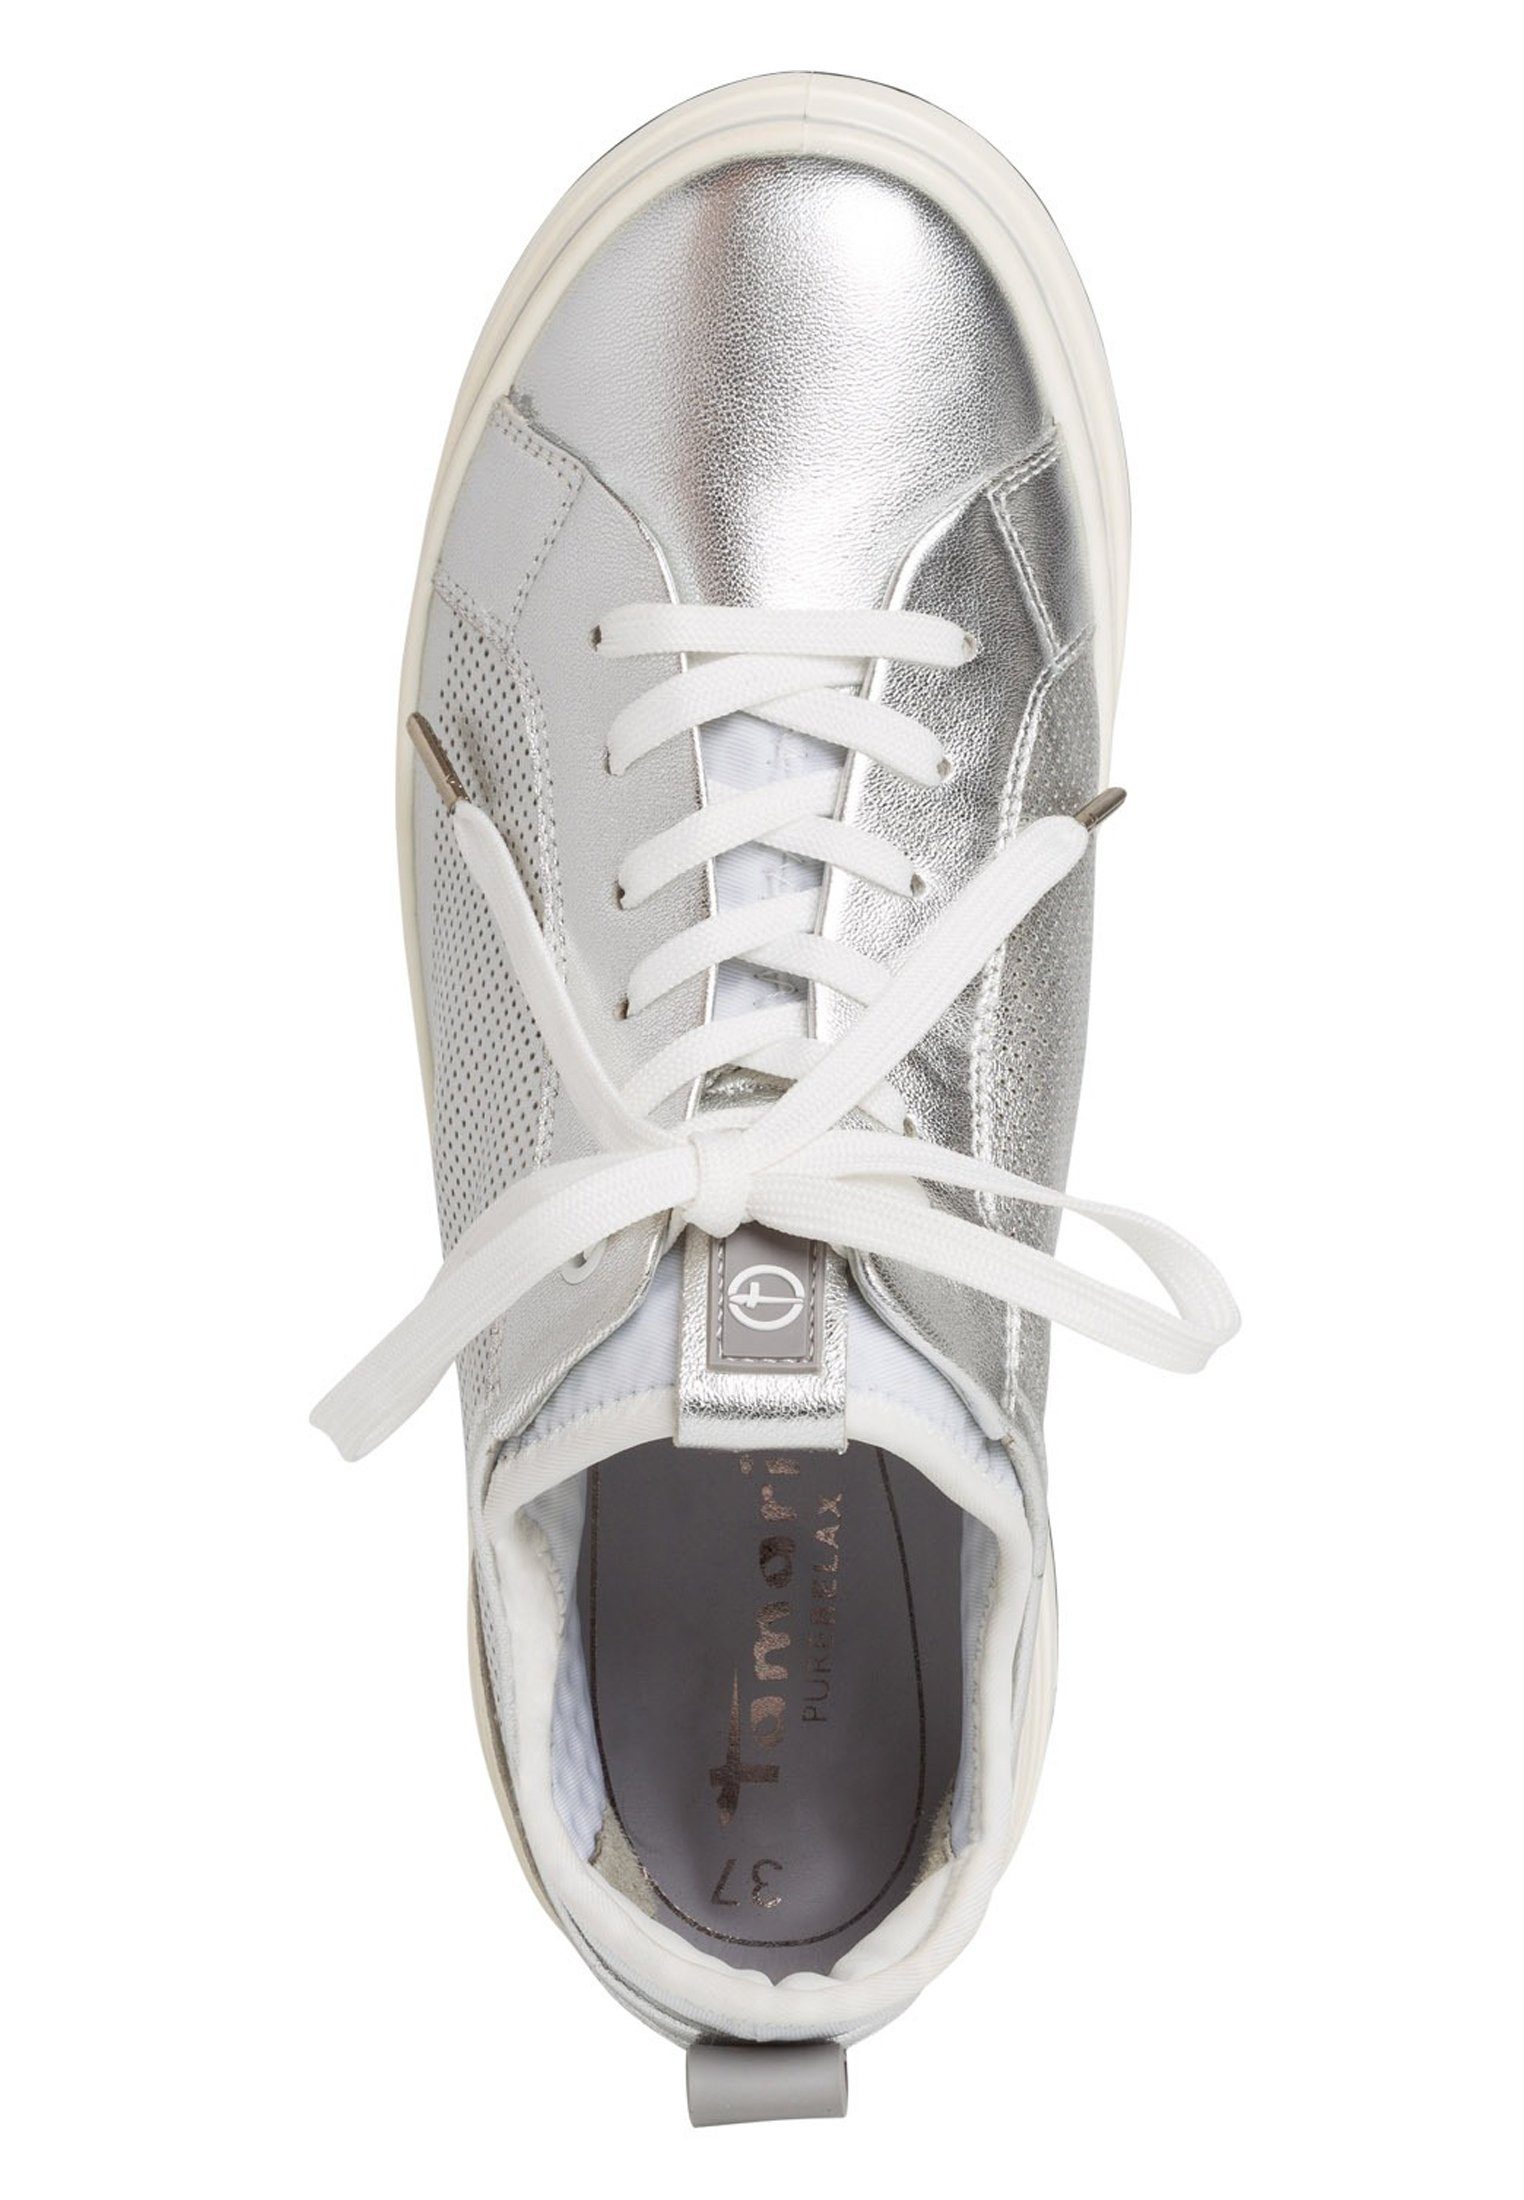 Tamaris 1-23716-24 950 Sneaker White Silver